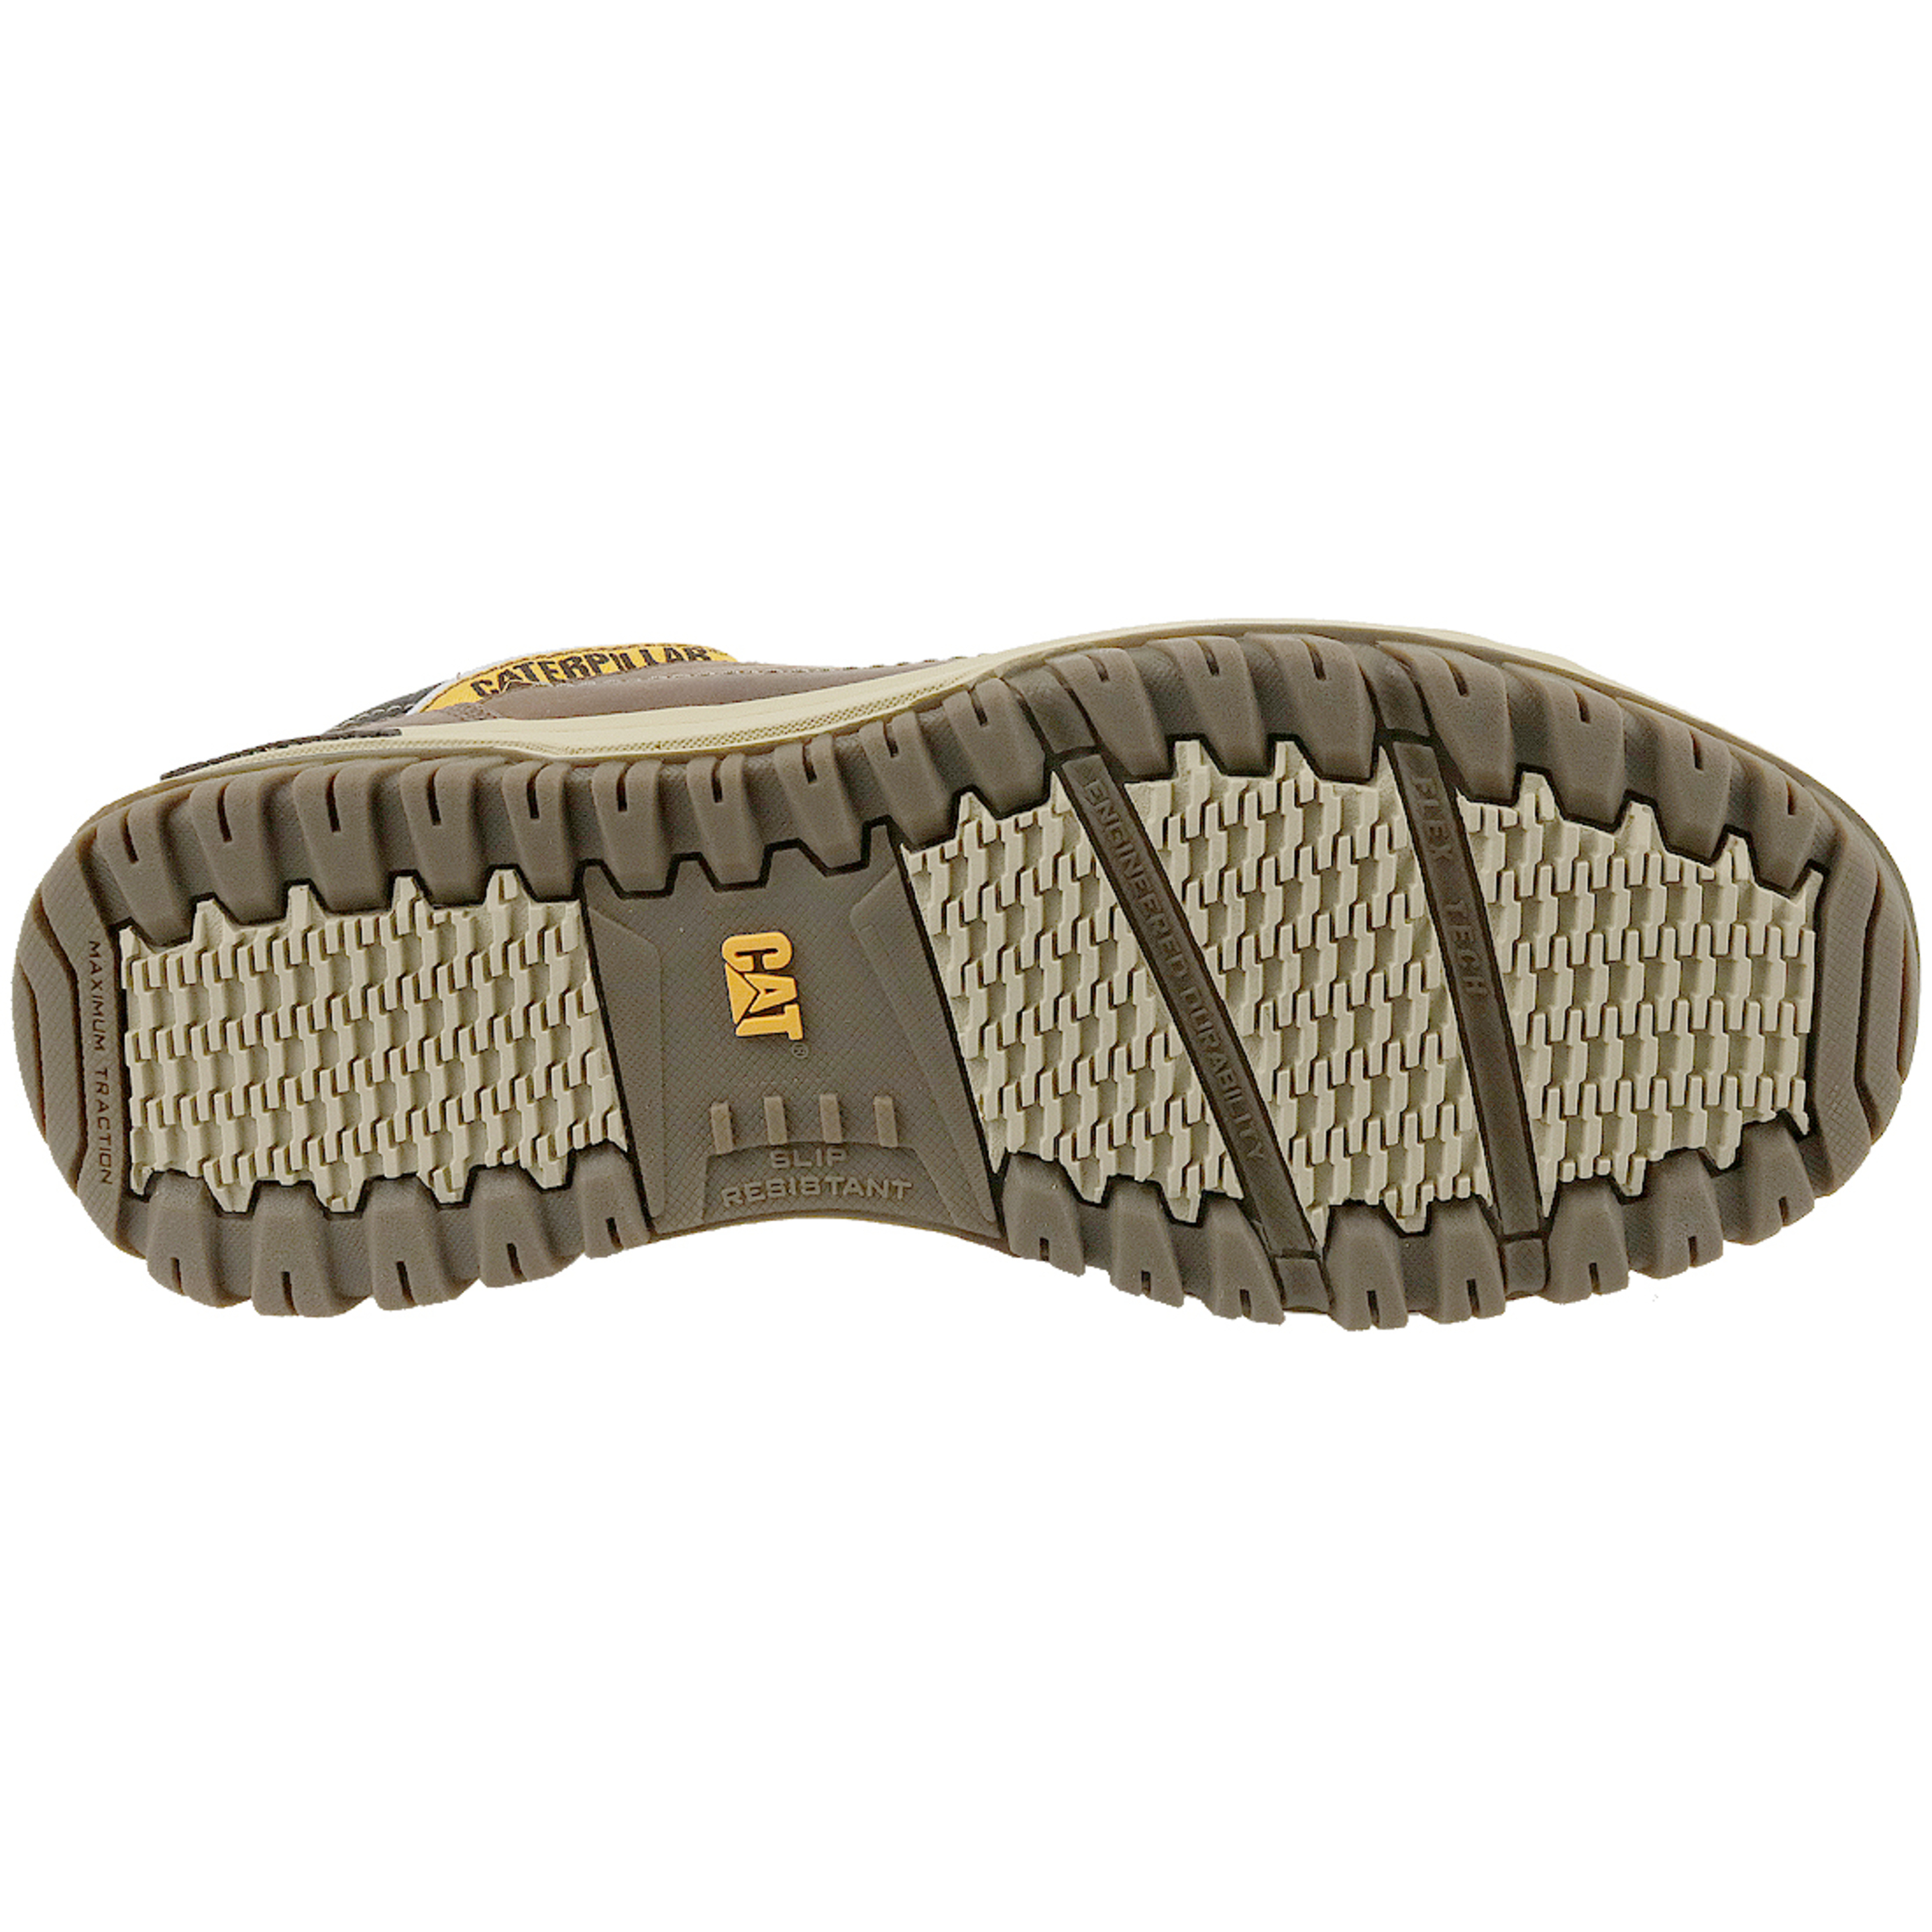 Zapatillas Caterpillar Apa P711584 - marron - Hombres, Marron, Zapatos De Trekking  MKP